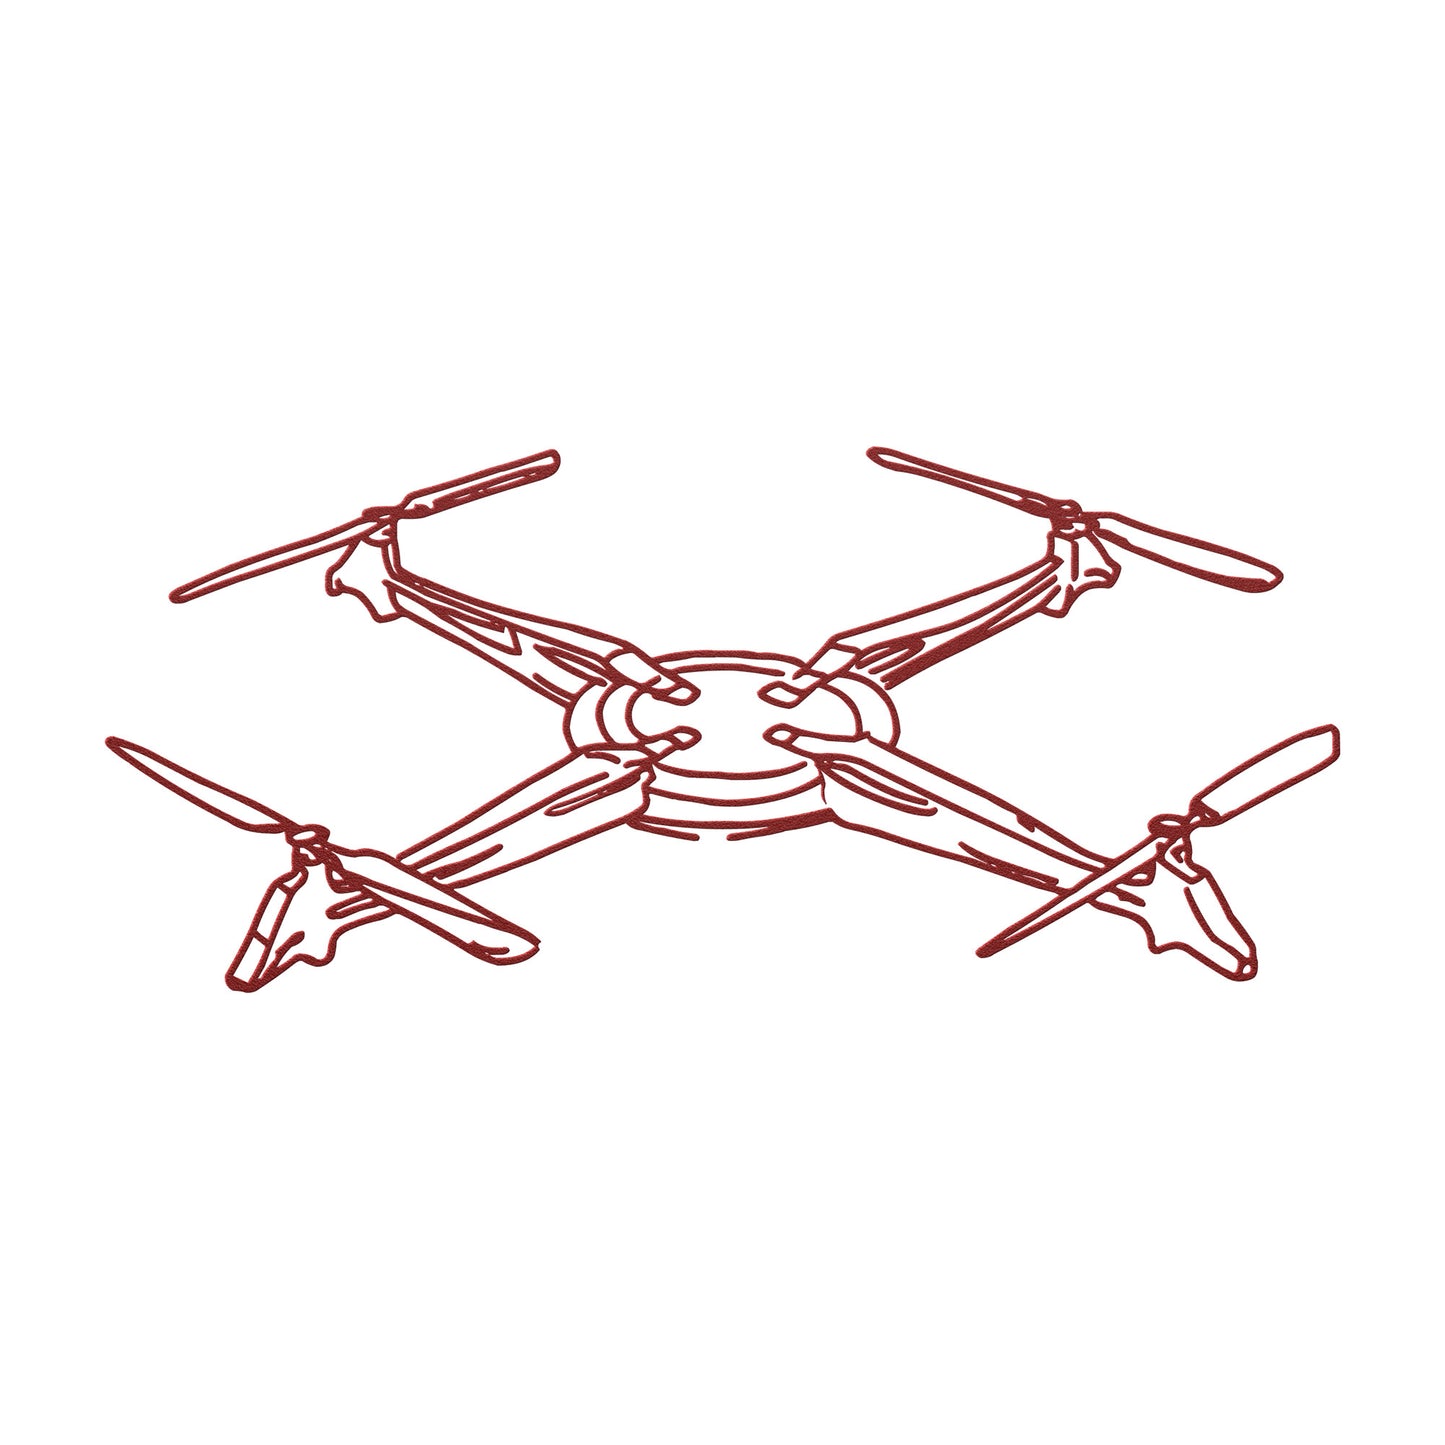 Drone Cutout Creation